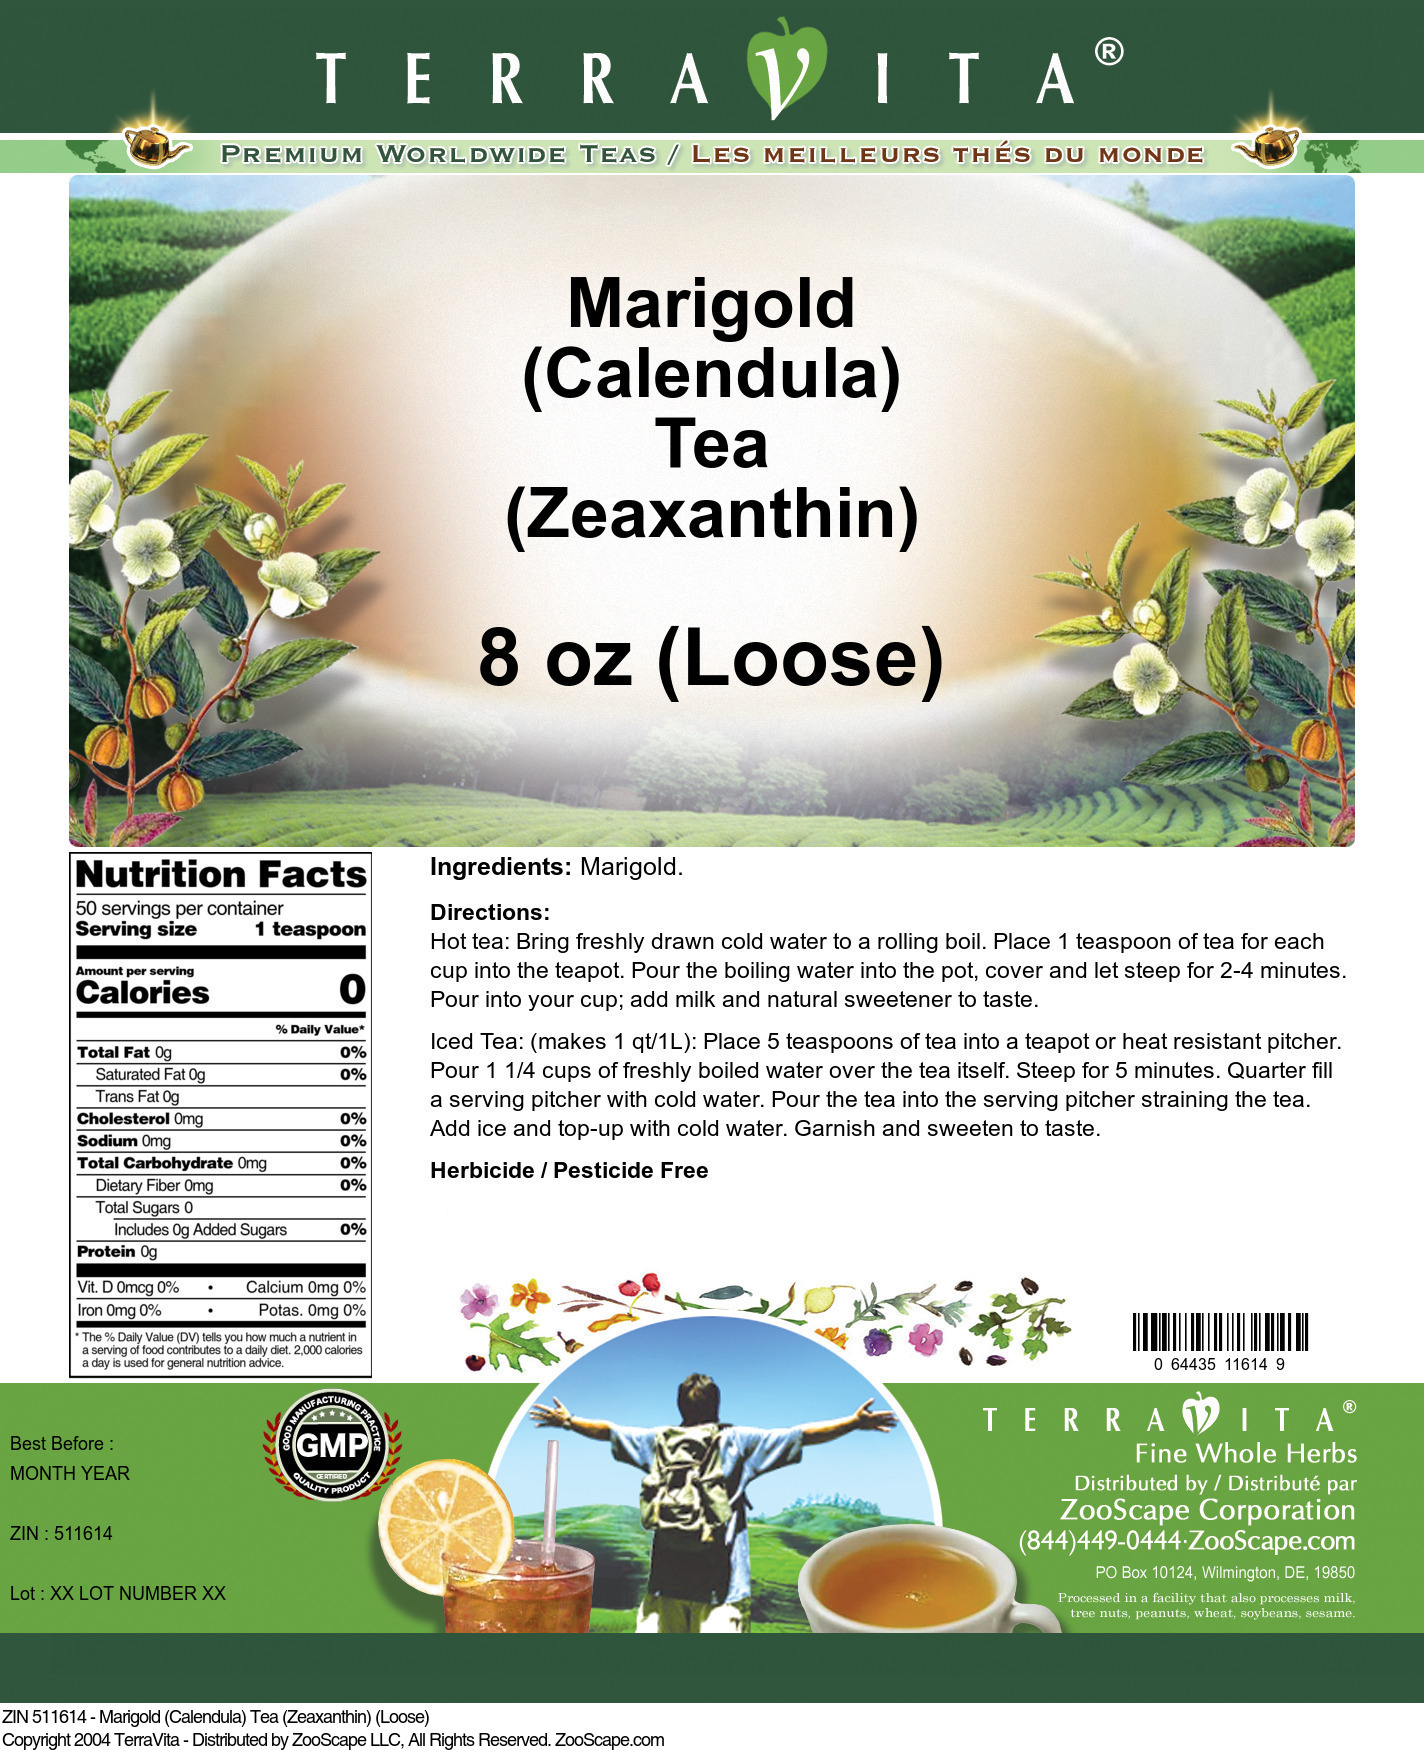 Marigold (Calendula) Tea (Zeaxanthin) (Loose) - Label